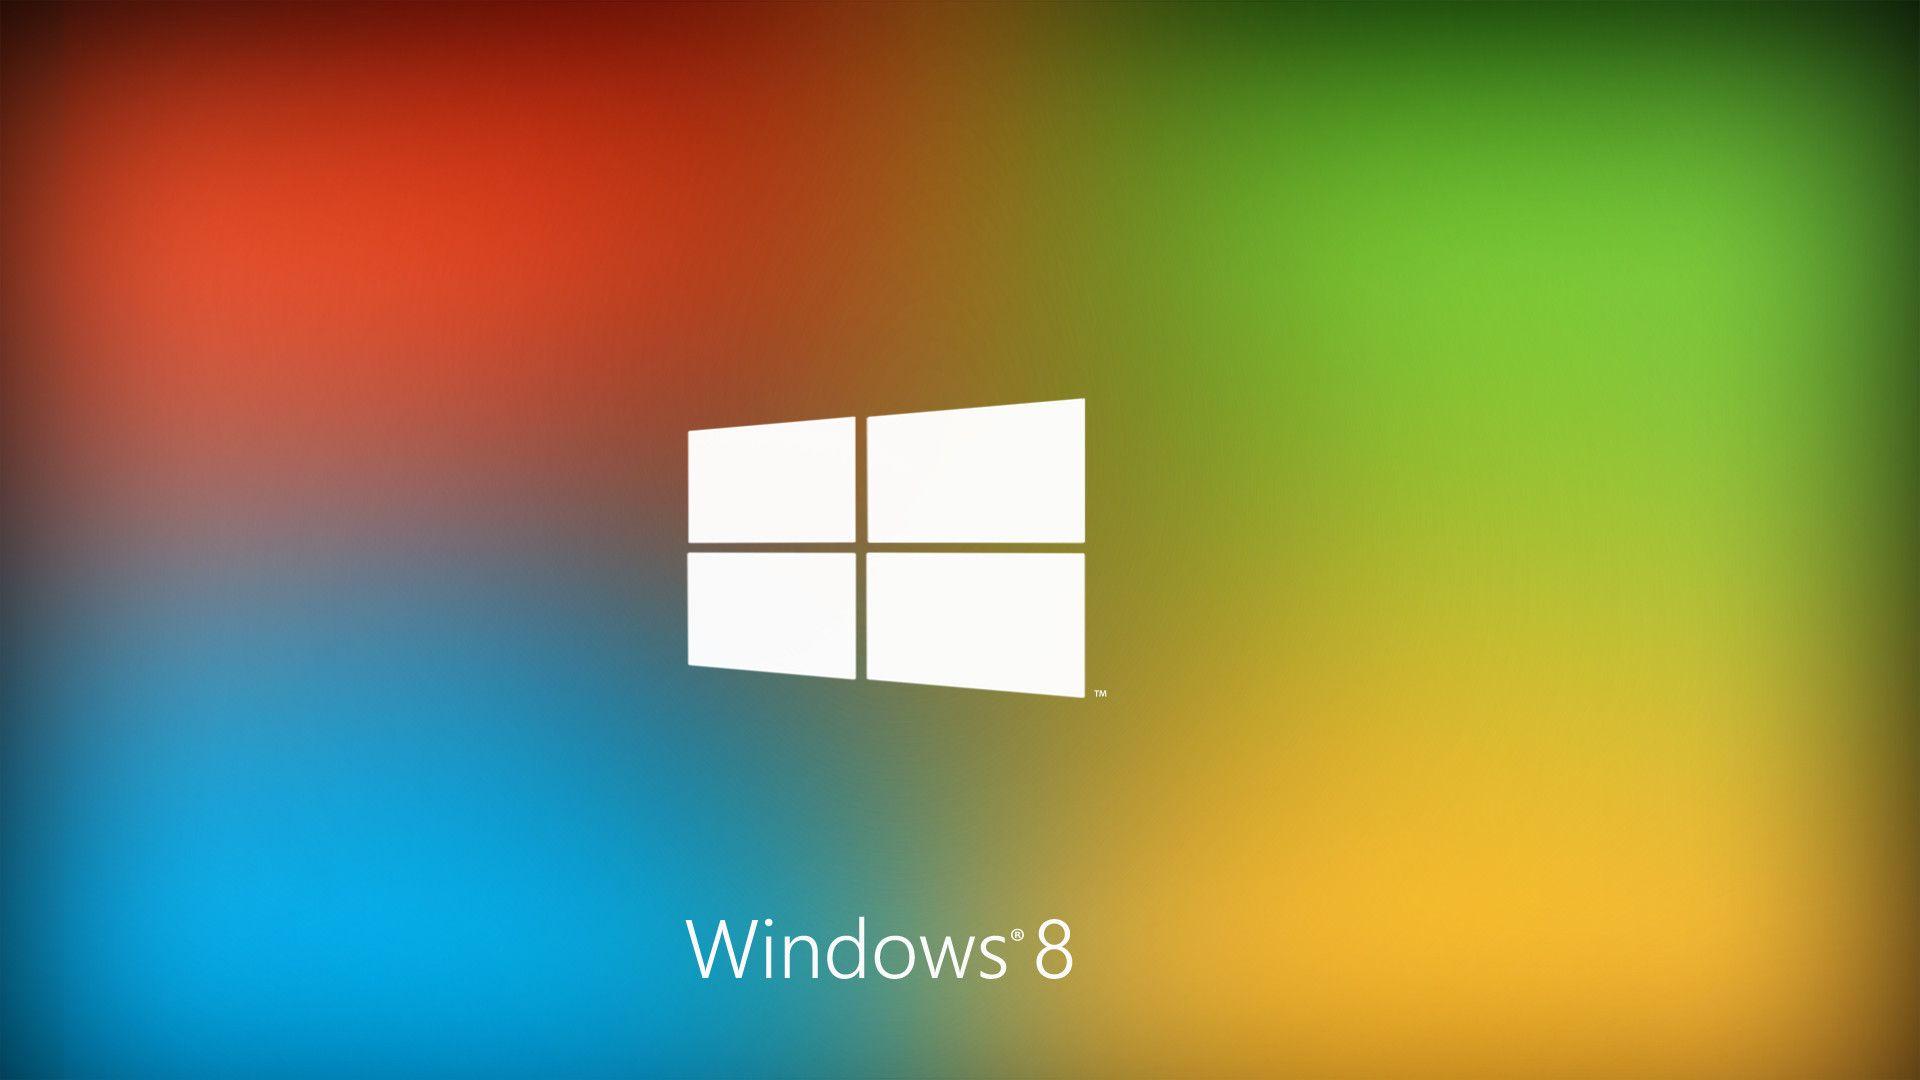 Widescreen HD Wallpaper For Windows 8 Desktop Background